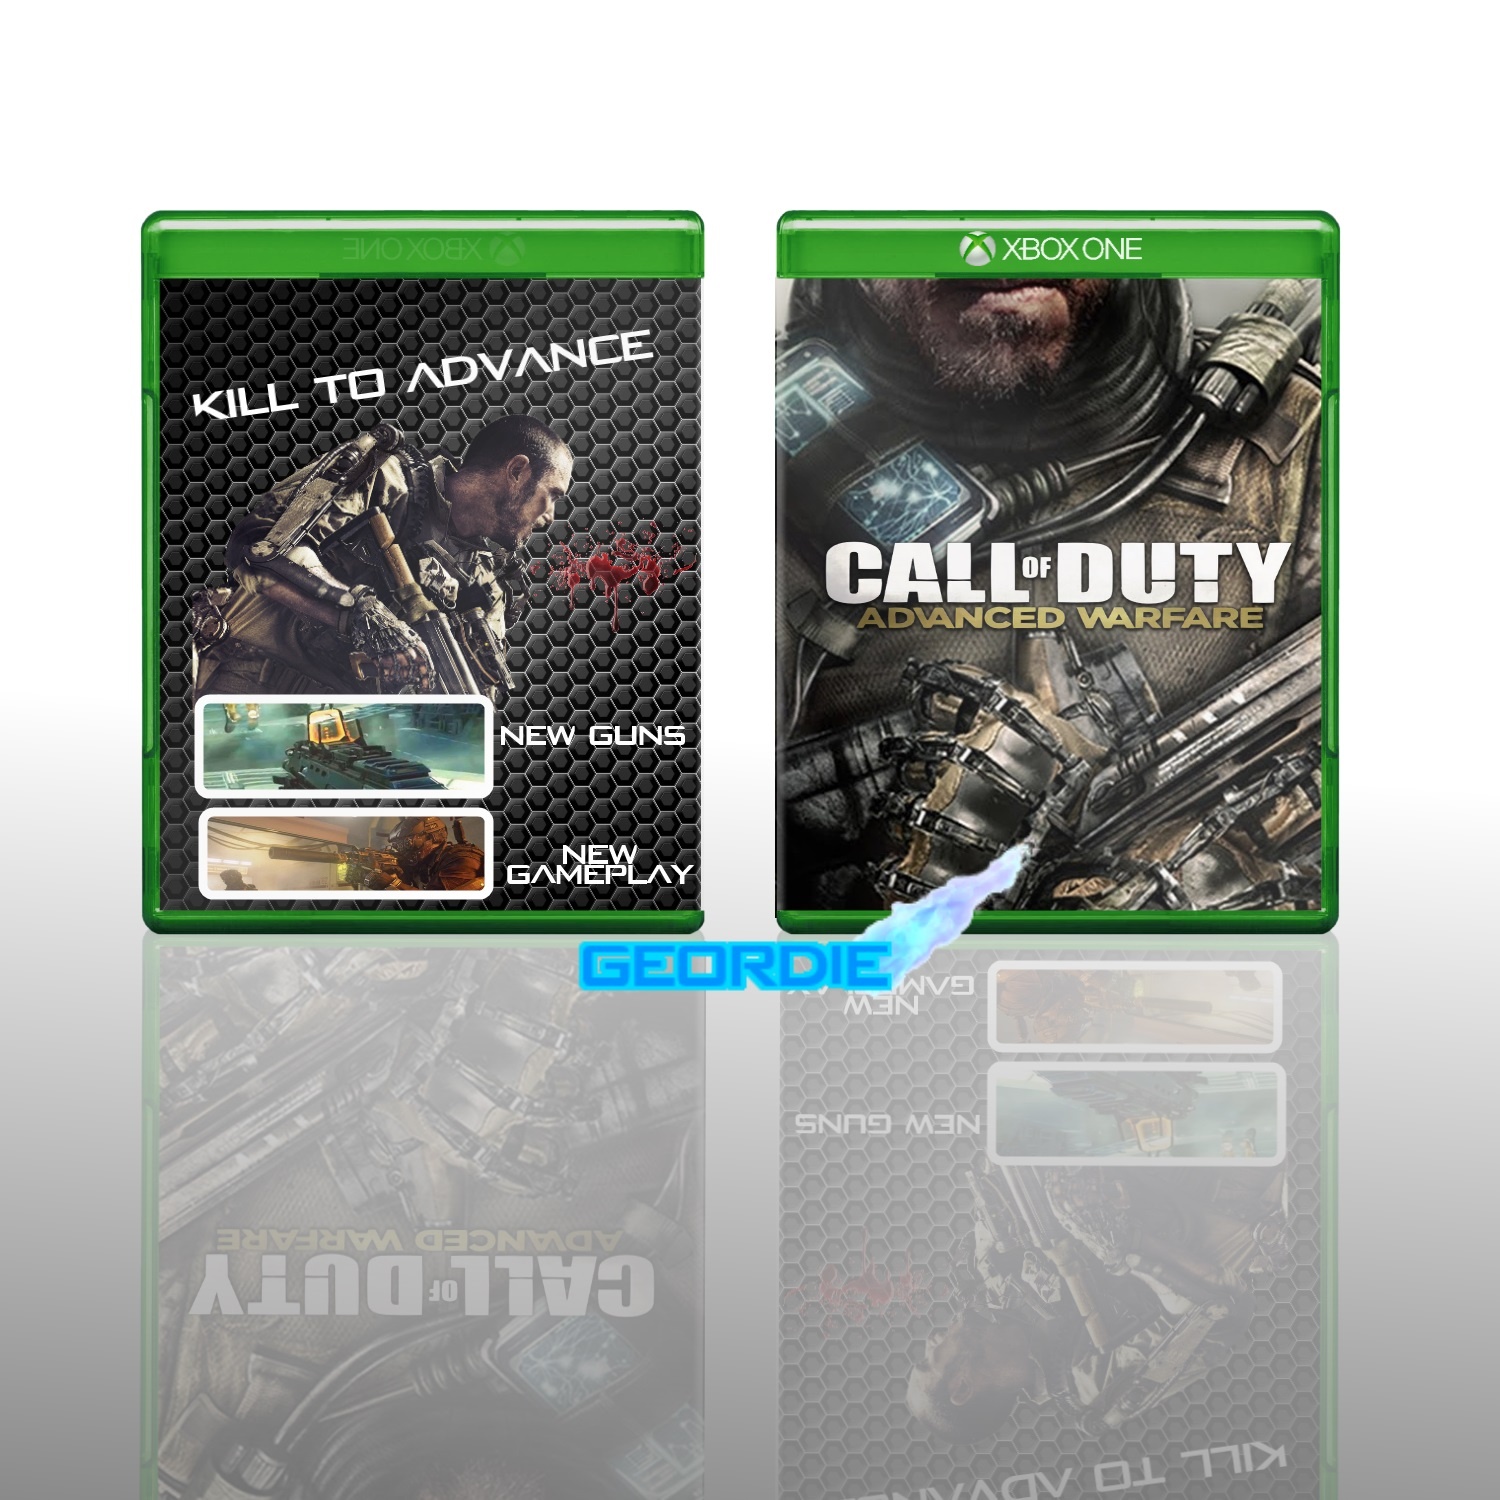 COD: Advanced Warfare box cover